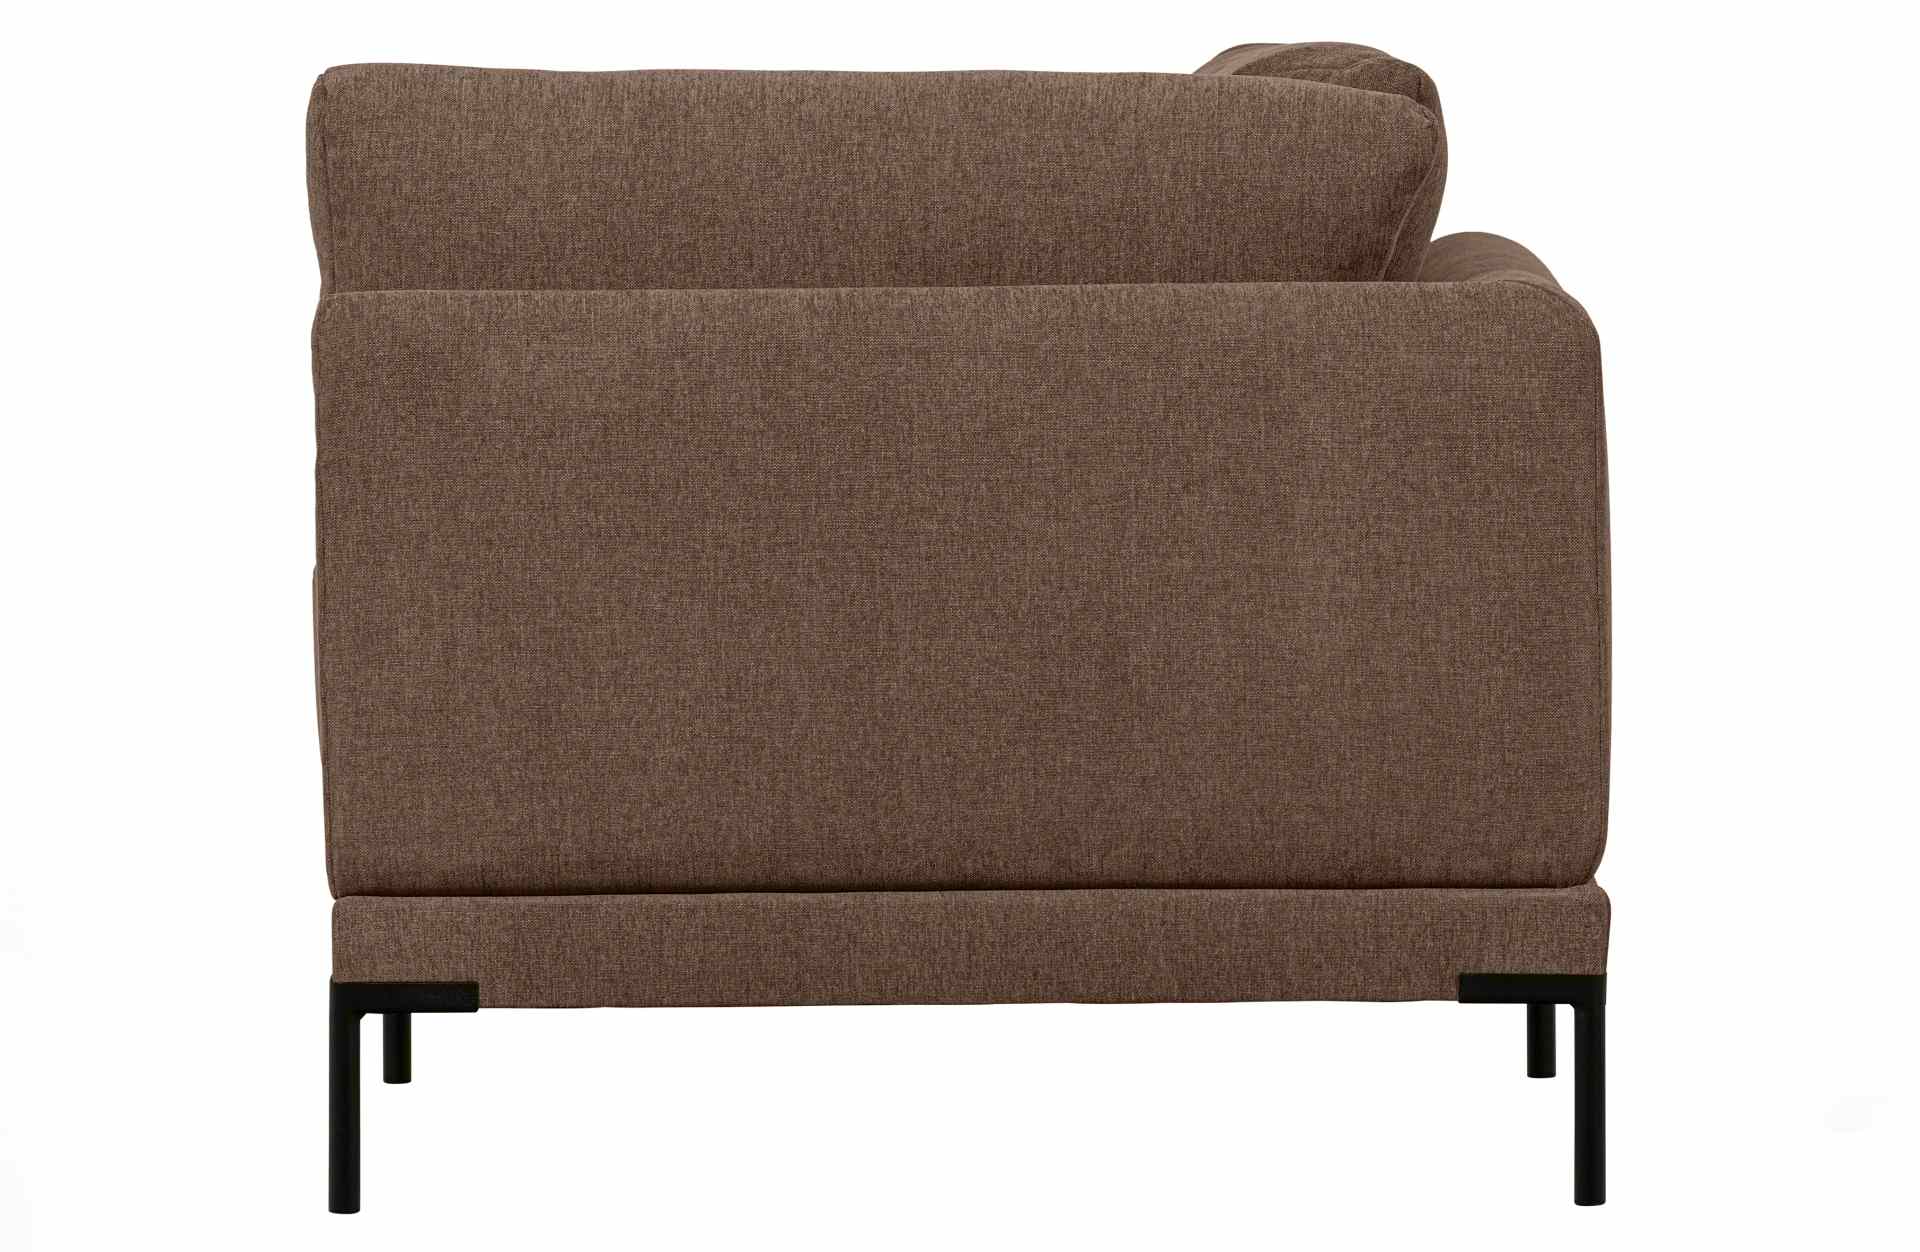 Das Modulsofa Couple Lounge überzeugt mit seinem modernen Design. Das Eck-Element wurde aus Melange Stoff gefertigt, welcher einen einen braunen Farbton besitzen. Das Gestell ist aus Metall und hat eine schwarze Farbe. Das Element hat eine Länge von 100 c